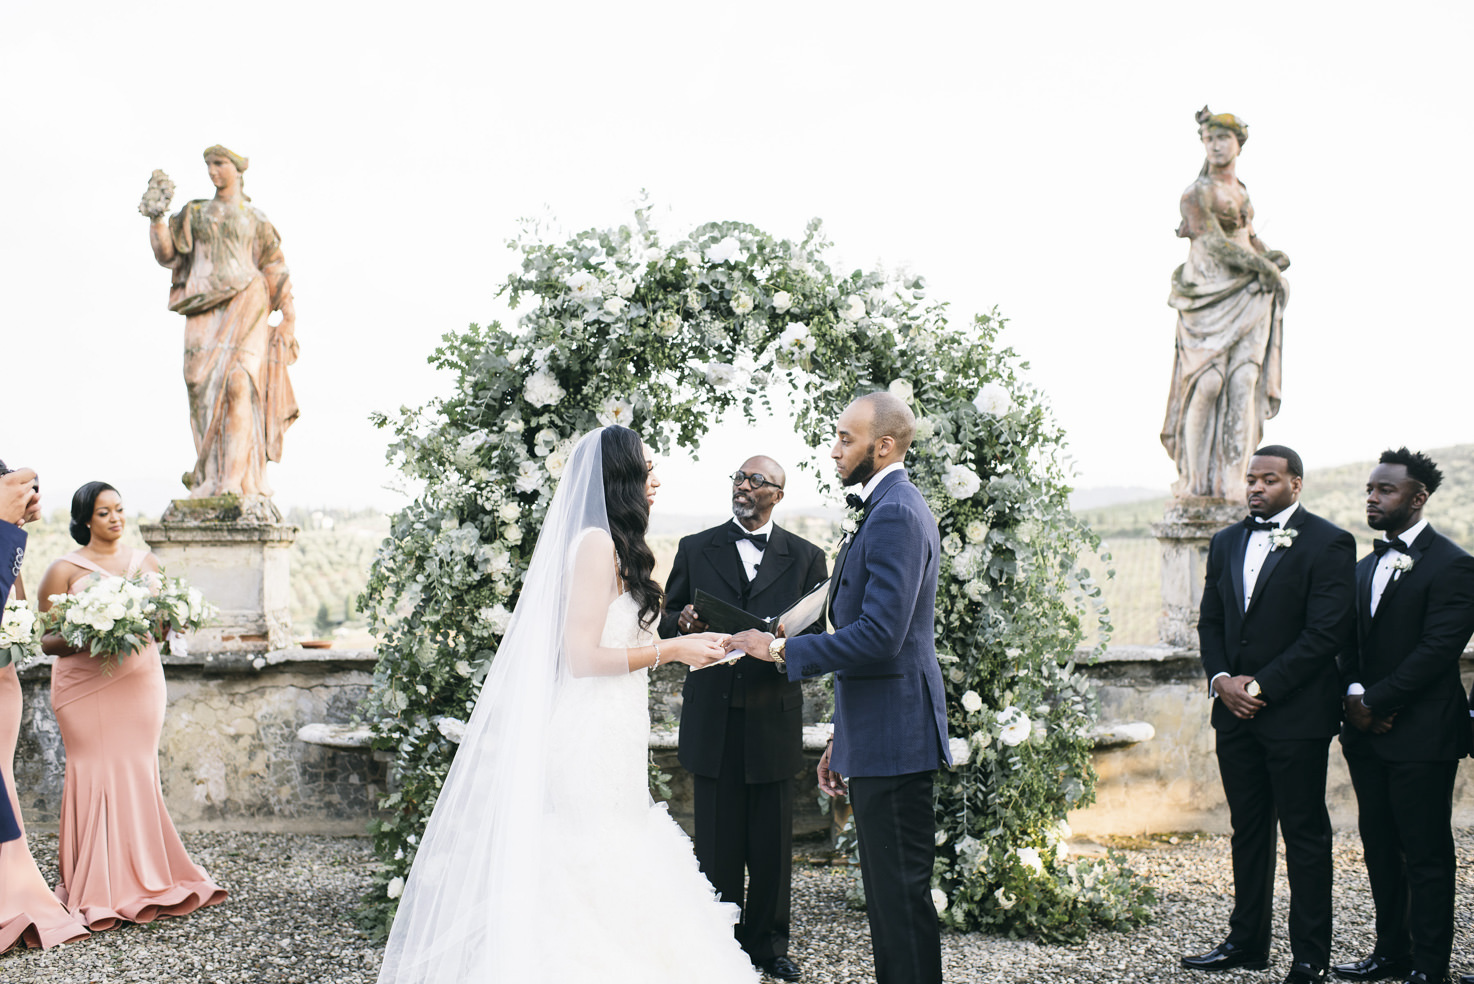 Wedding ceremony in the gardens of Villa Corsini